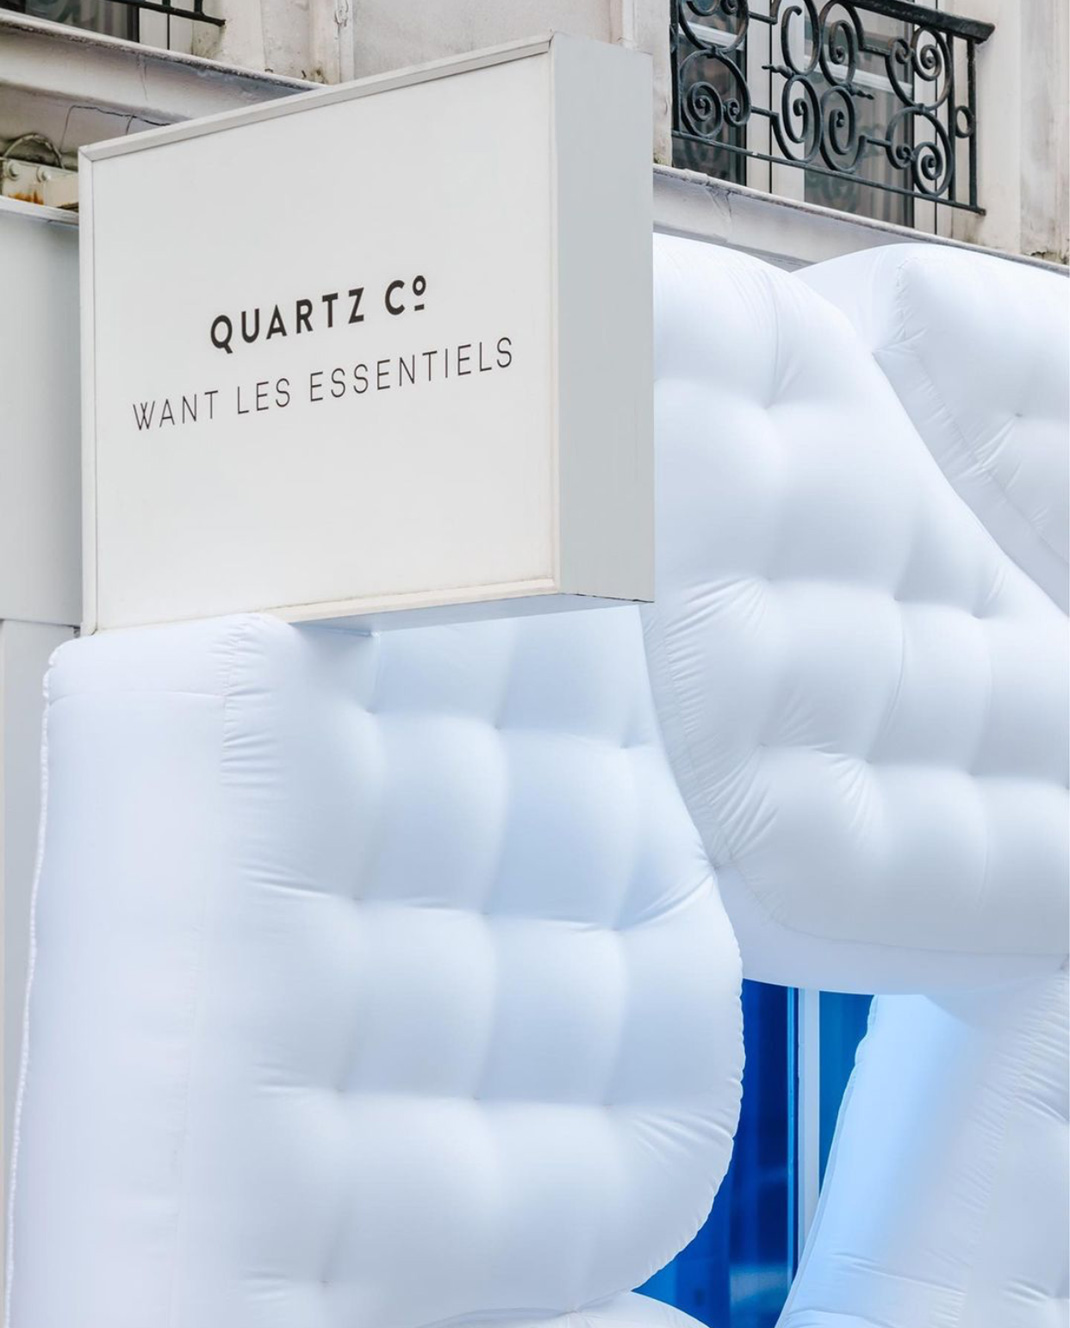 充气装置城市里的北欧景观空间美学QUARTZ CO 巴黎 装置 北欧 充气 概念店 logo设计 vi设计 空间设计